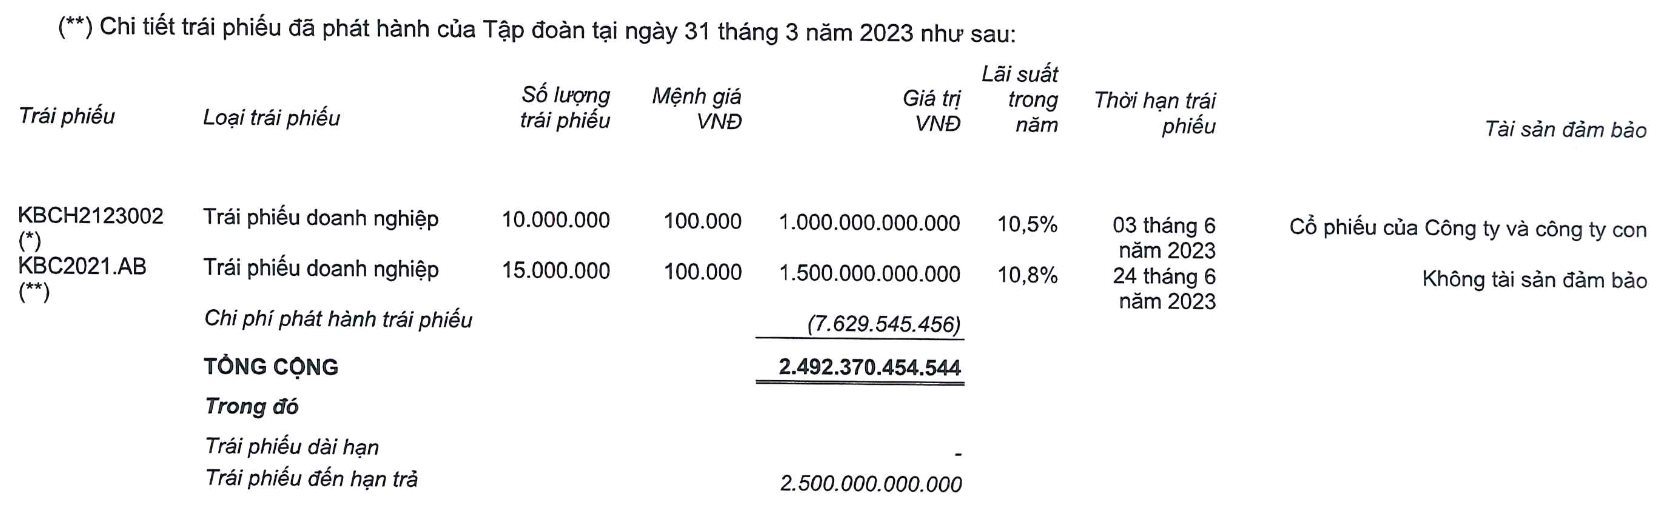 Kinh Bắc (KBC) đặt mục tiêu lợi nhuận 4.000 tỷ đồng, ưu tiên trả hết nợ trái phiếu - Ảnh 2.